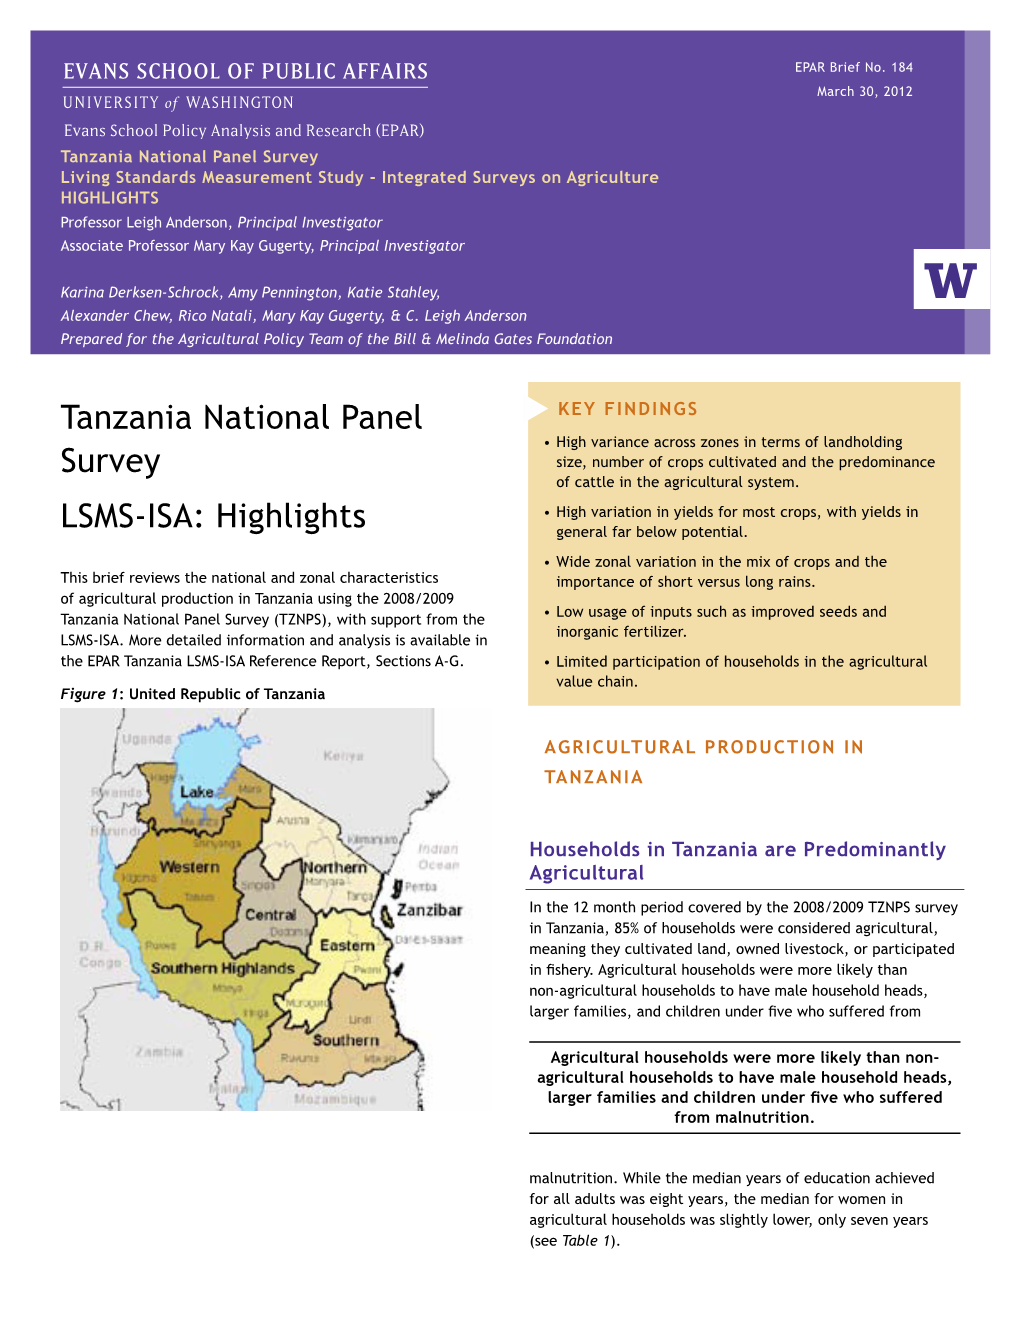 Tanzania National Panel Survey LSMS-ISA: Highlights